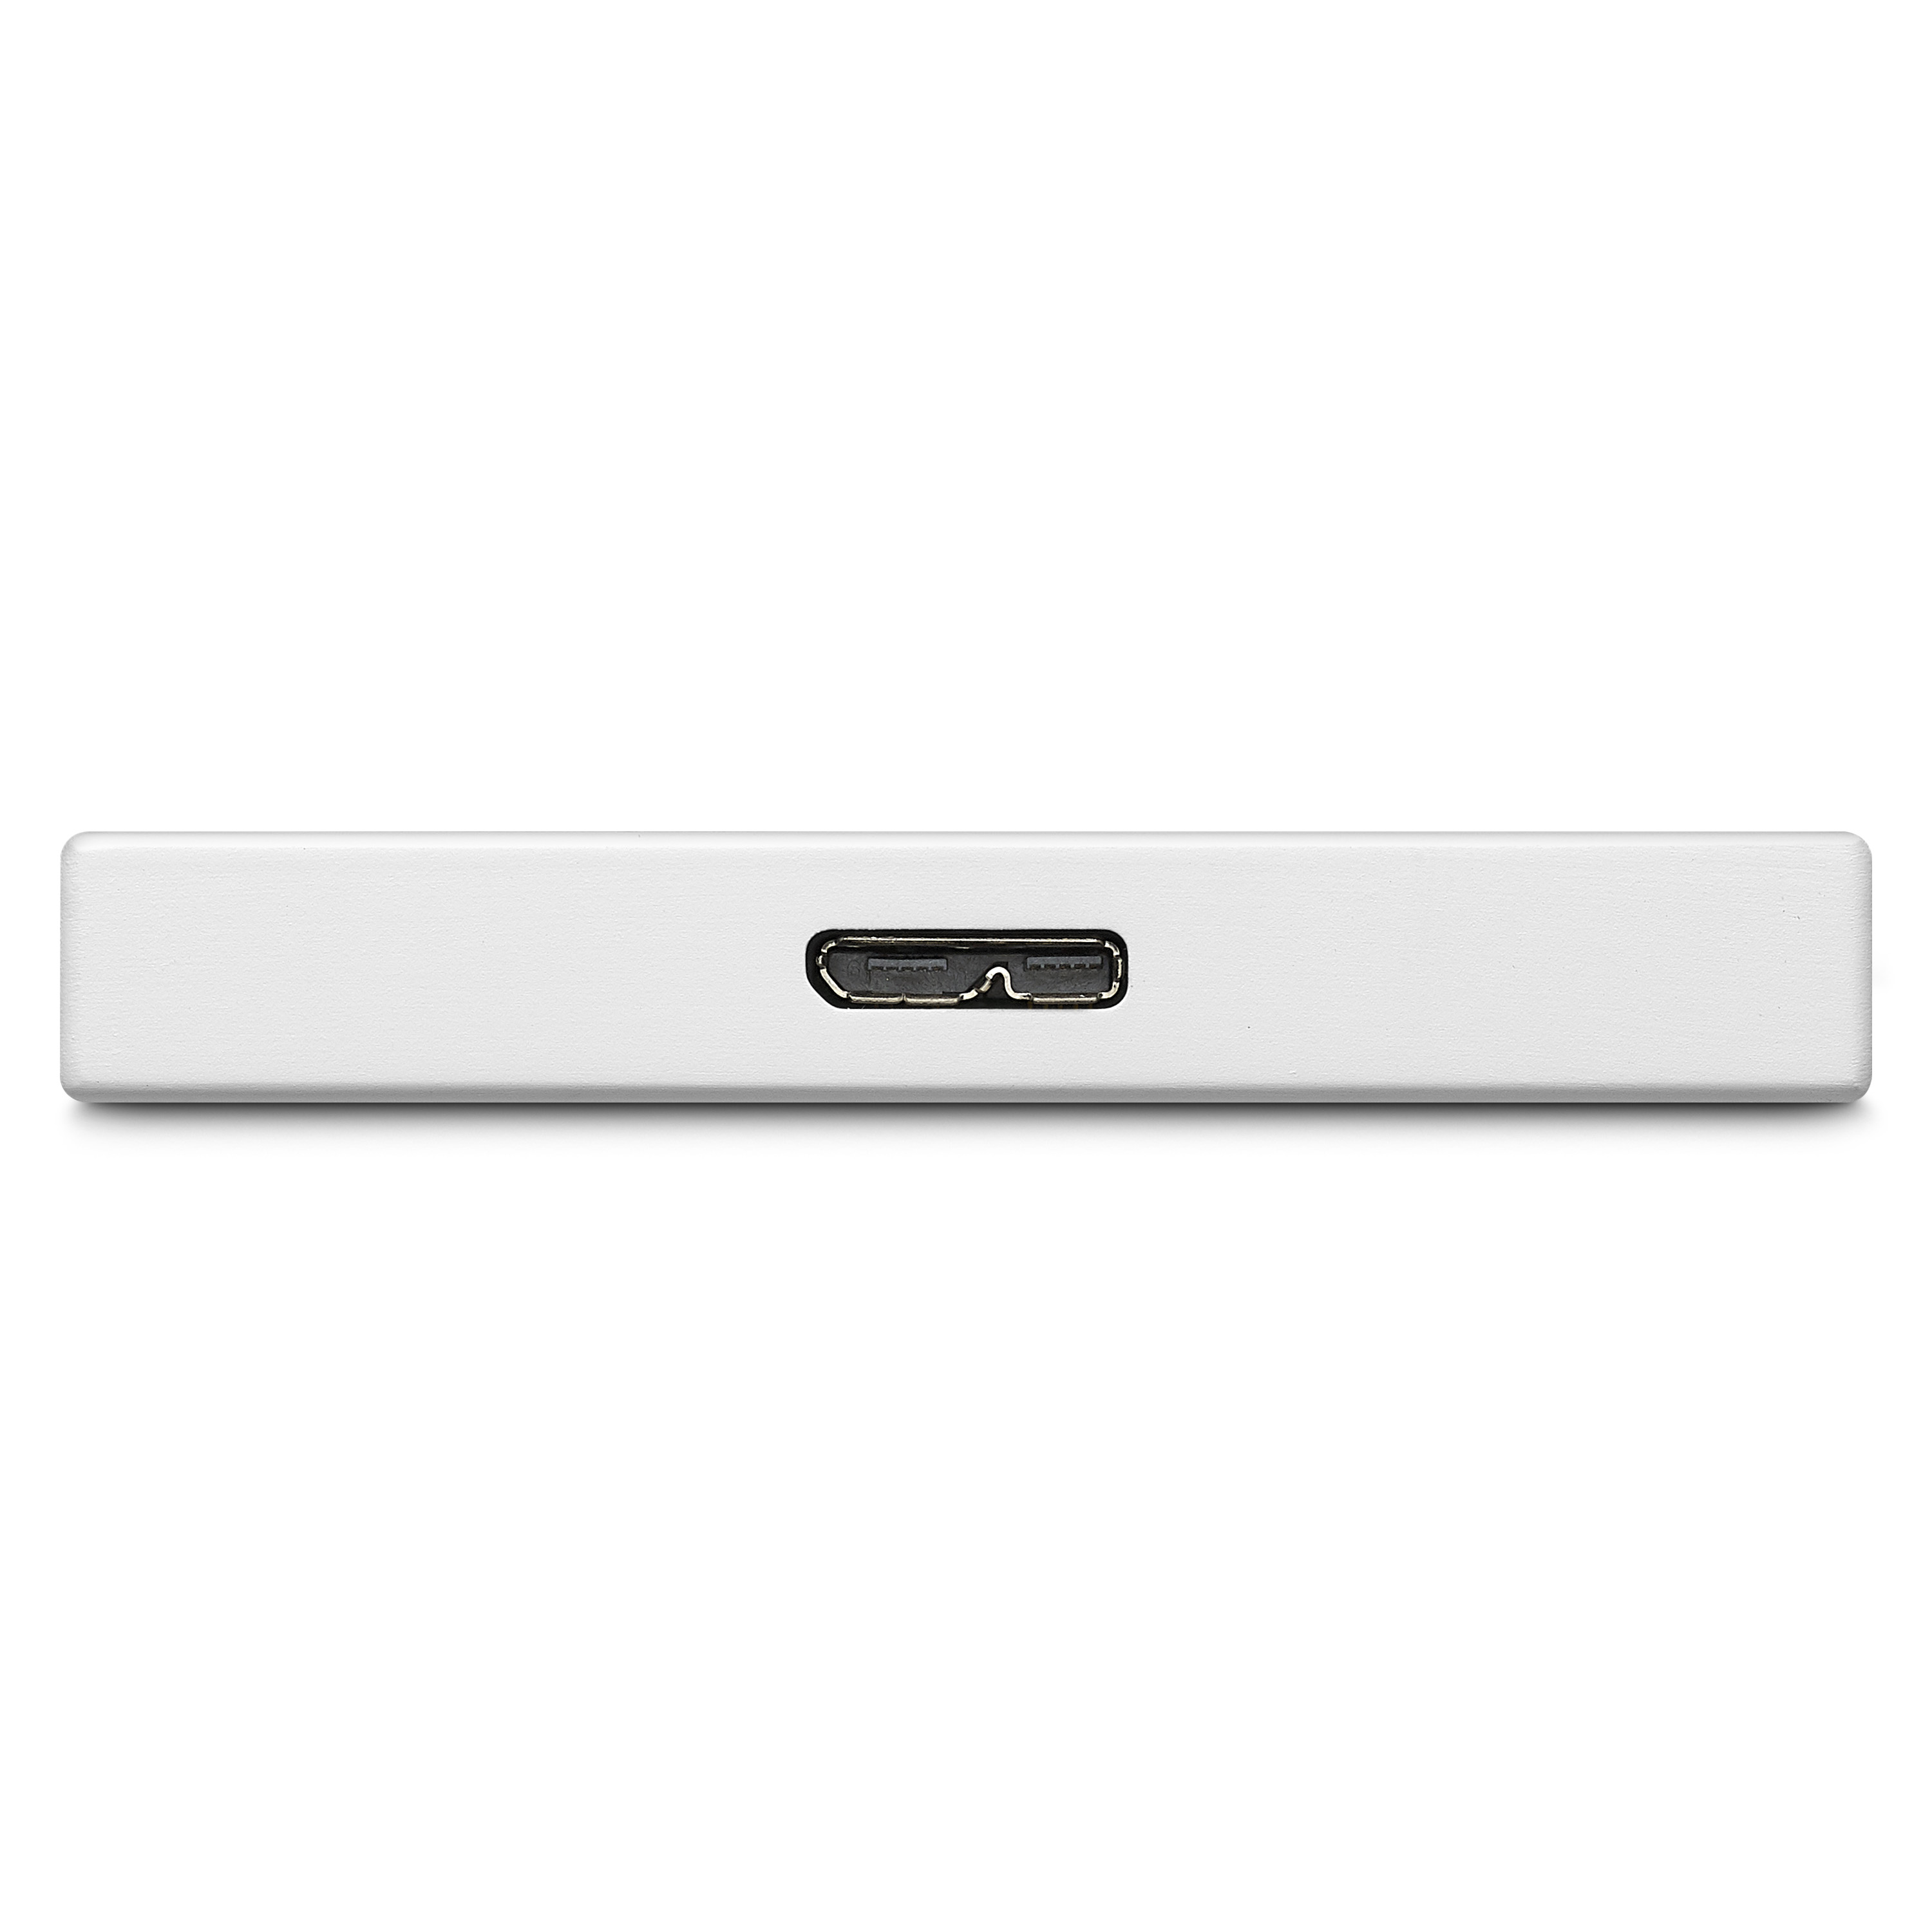 Ổ Cứng Di Động HDD Seagate One Touch 2.5" USB 3.0 - Hàng Chính Hãng